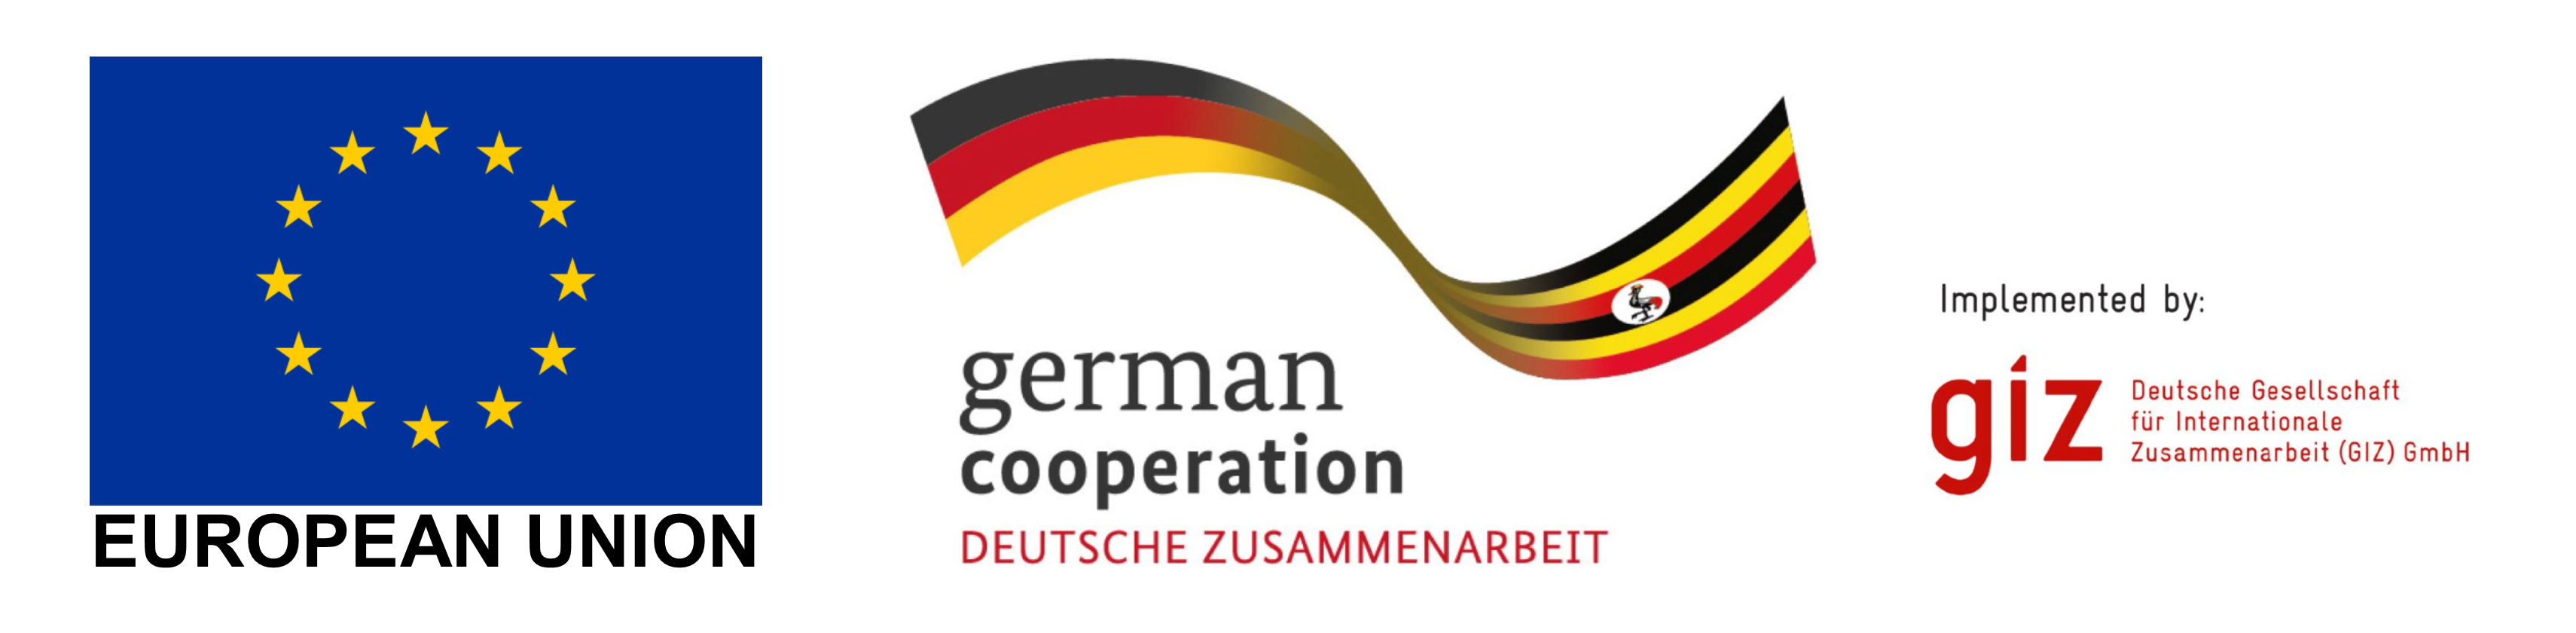 EU_German Cooperation_GIZ.png